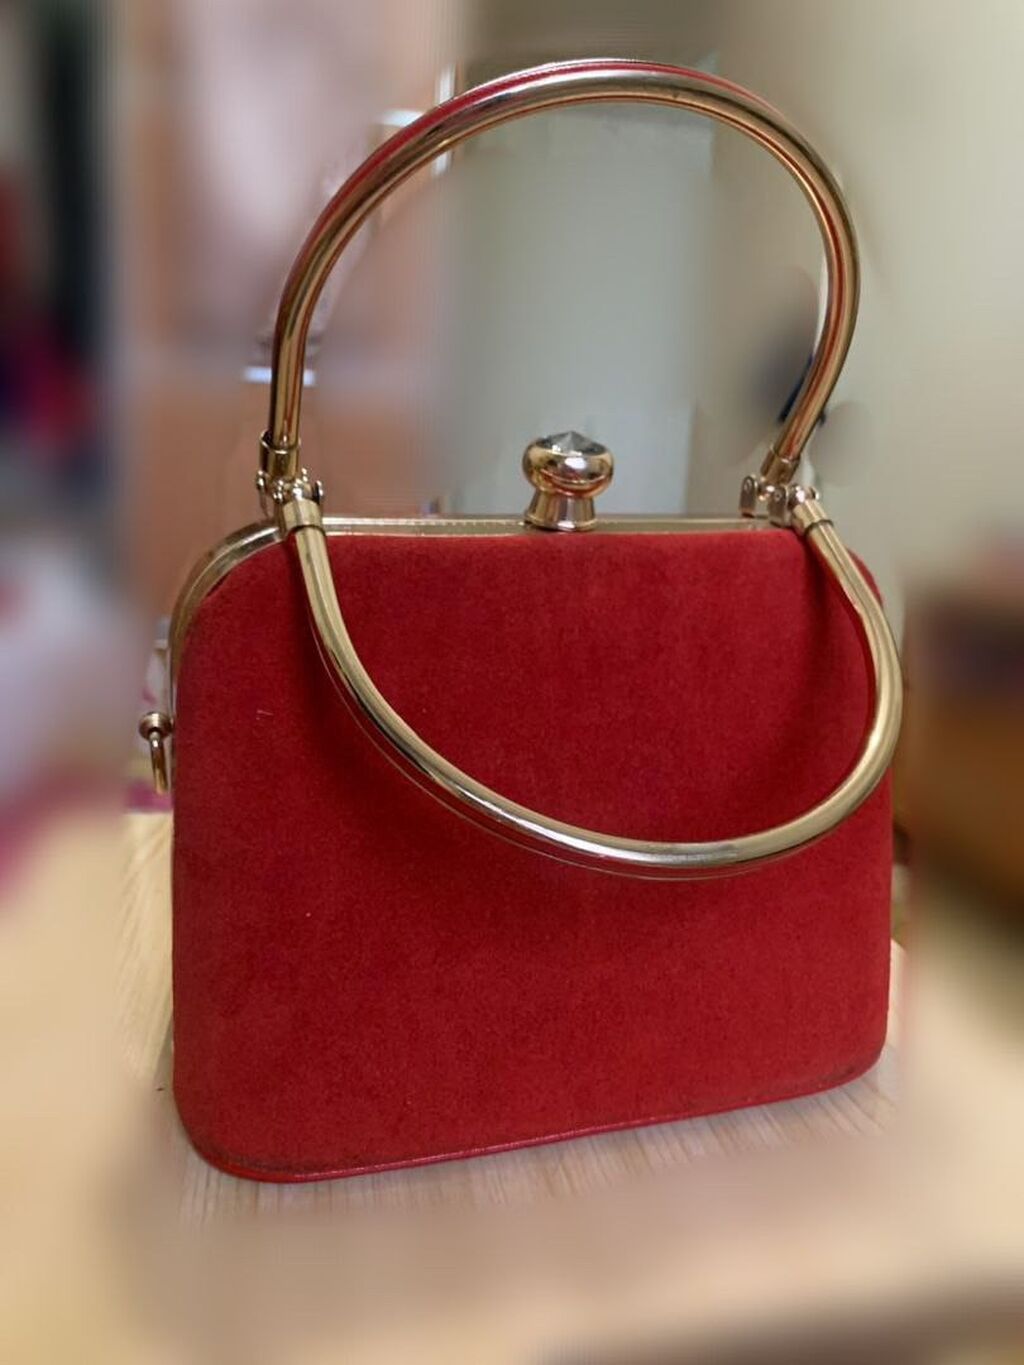 Купить сумку женскую в интернет - магазине женских сумок Giuliani Romano, женские сумки Москва